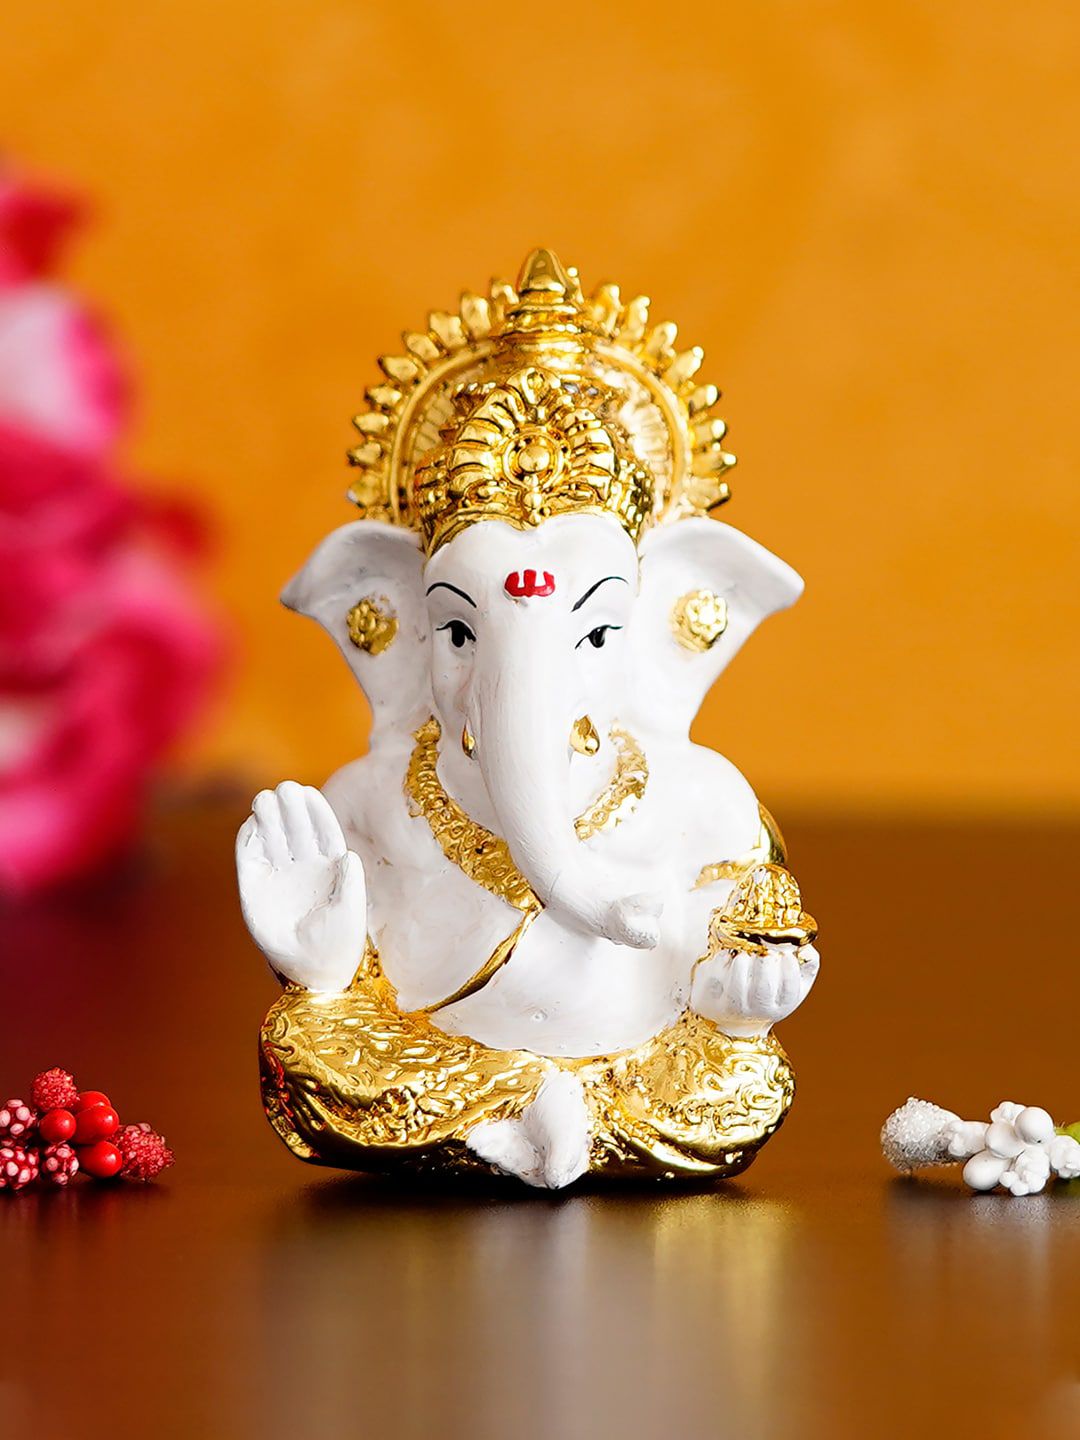 eCraftIndia Gold-Toned & White Siddhivinayak Ganesha Showpiece Price in India